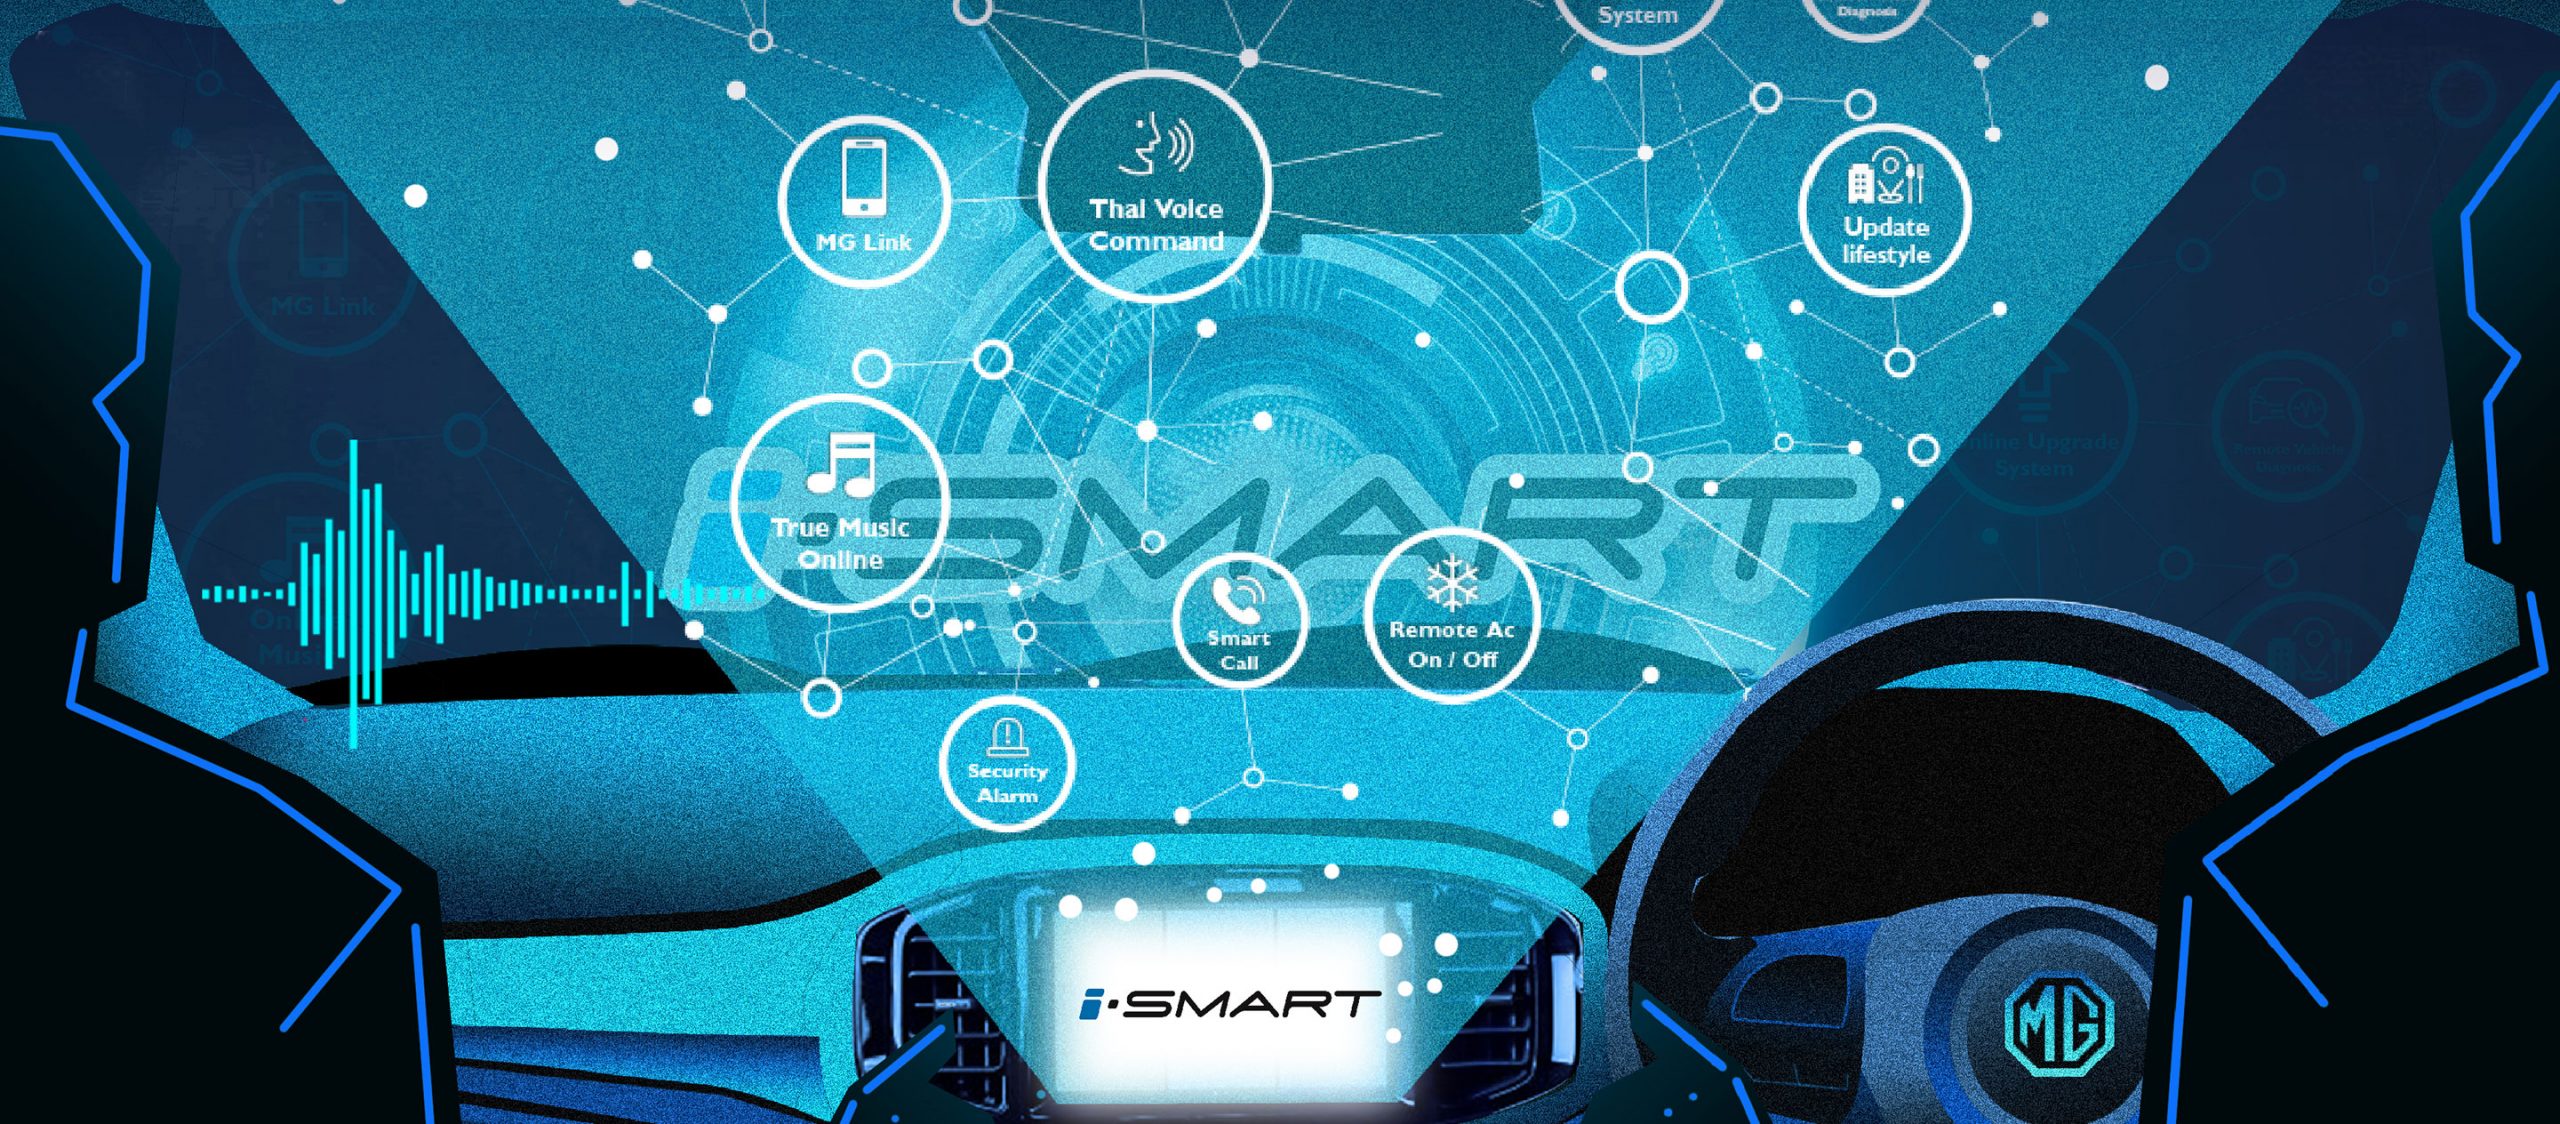 i-SMART : เมื่อเทคโนโลยีหลอมรวมเข้ากับรถยนต์ ผลลัพธ์จะเป็นอะไร?